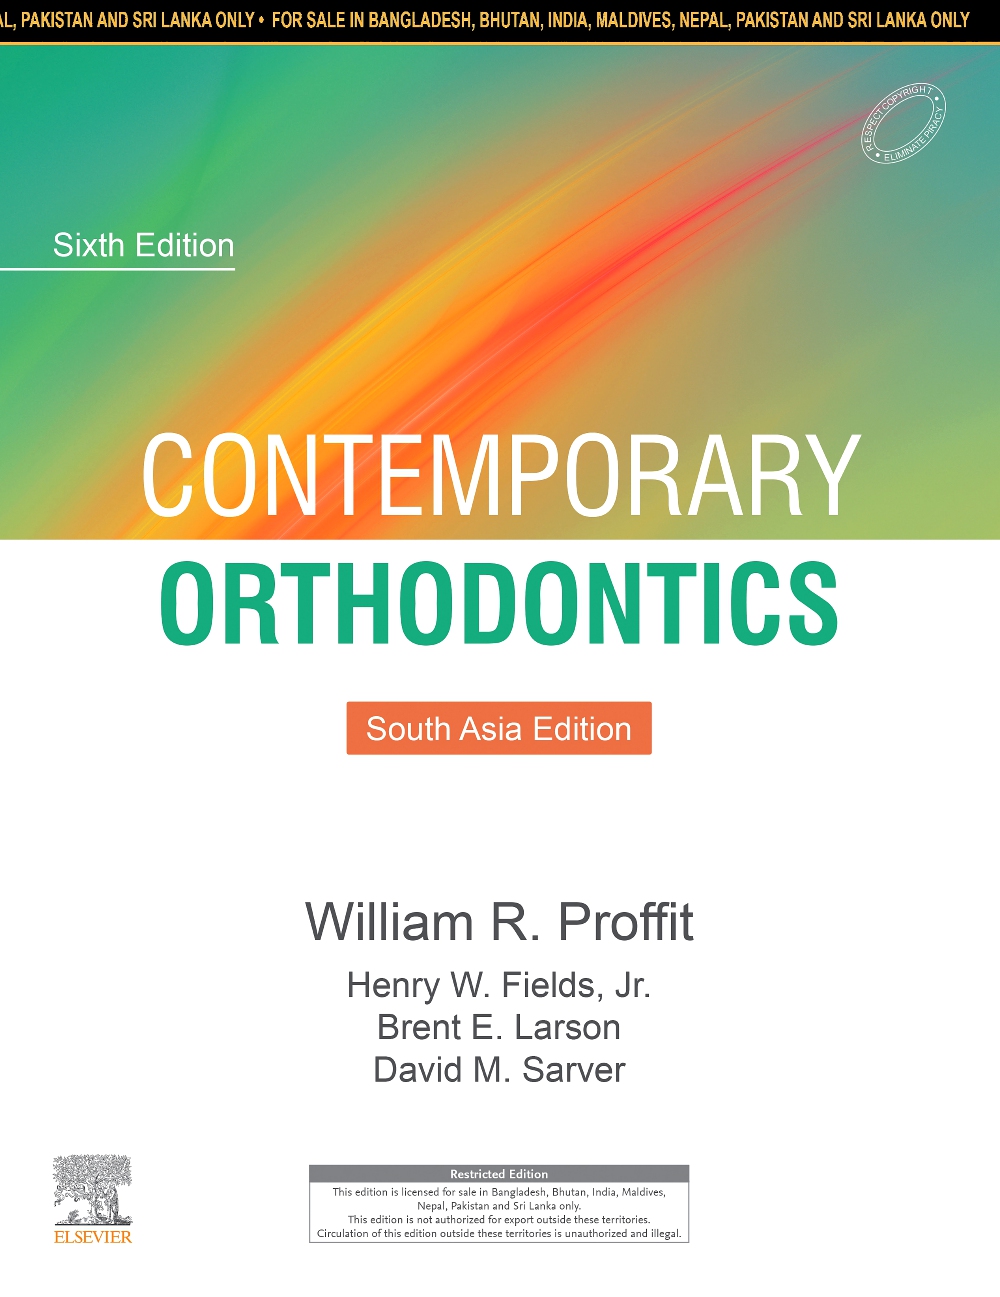 Contemporary Orthodontics, 6E : South Asia Edition